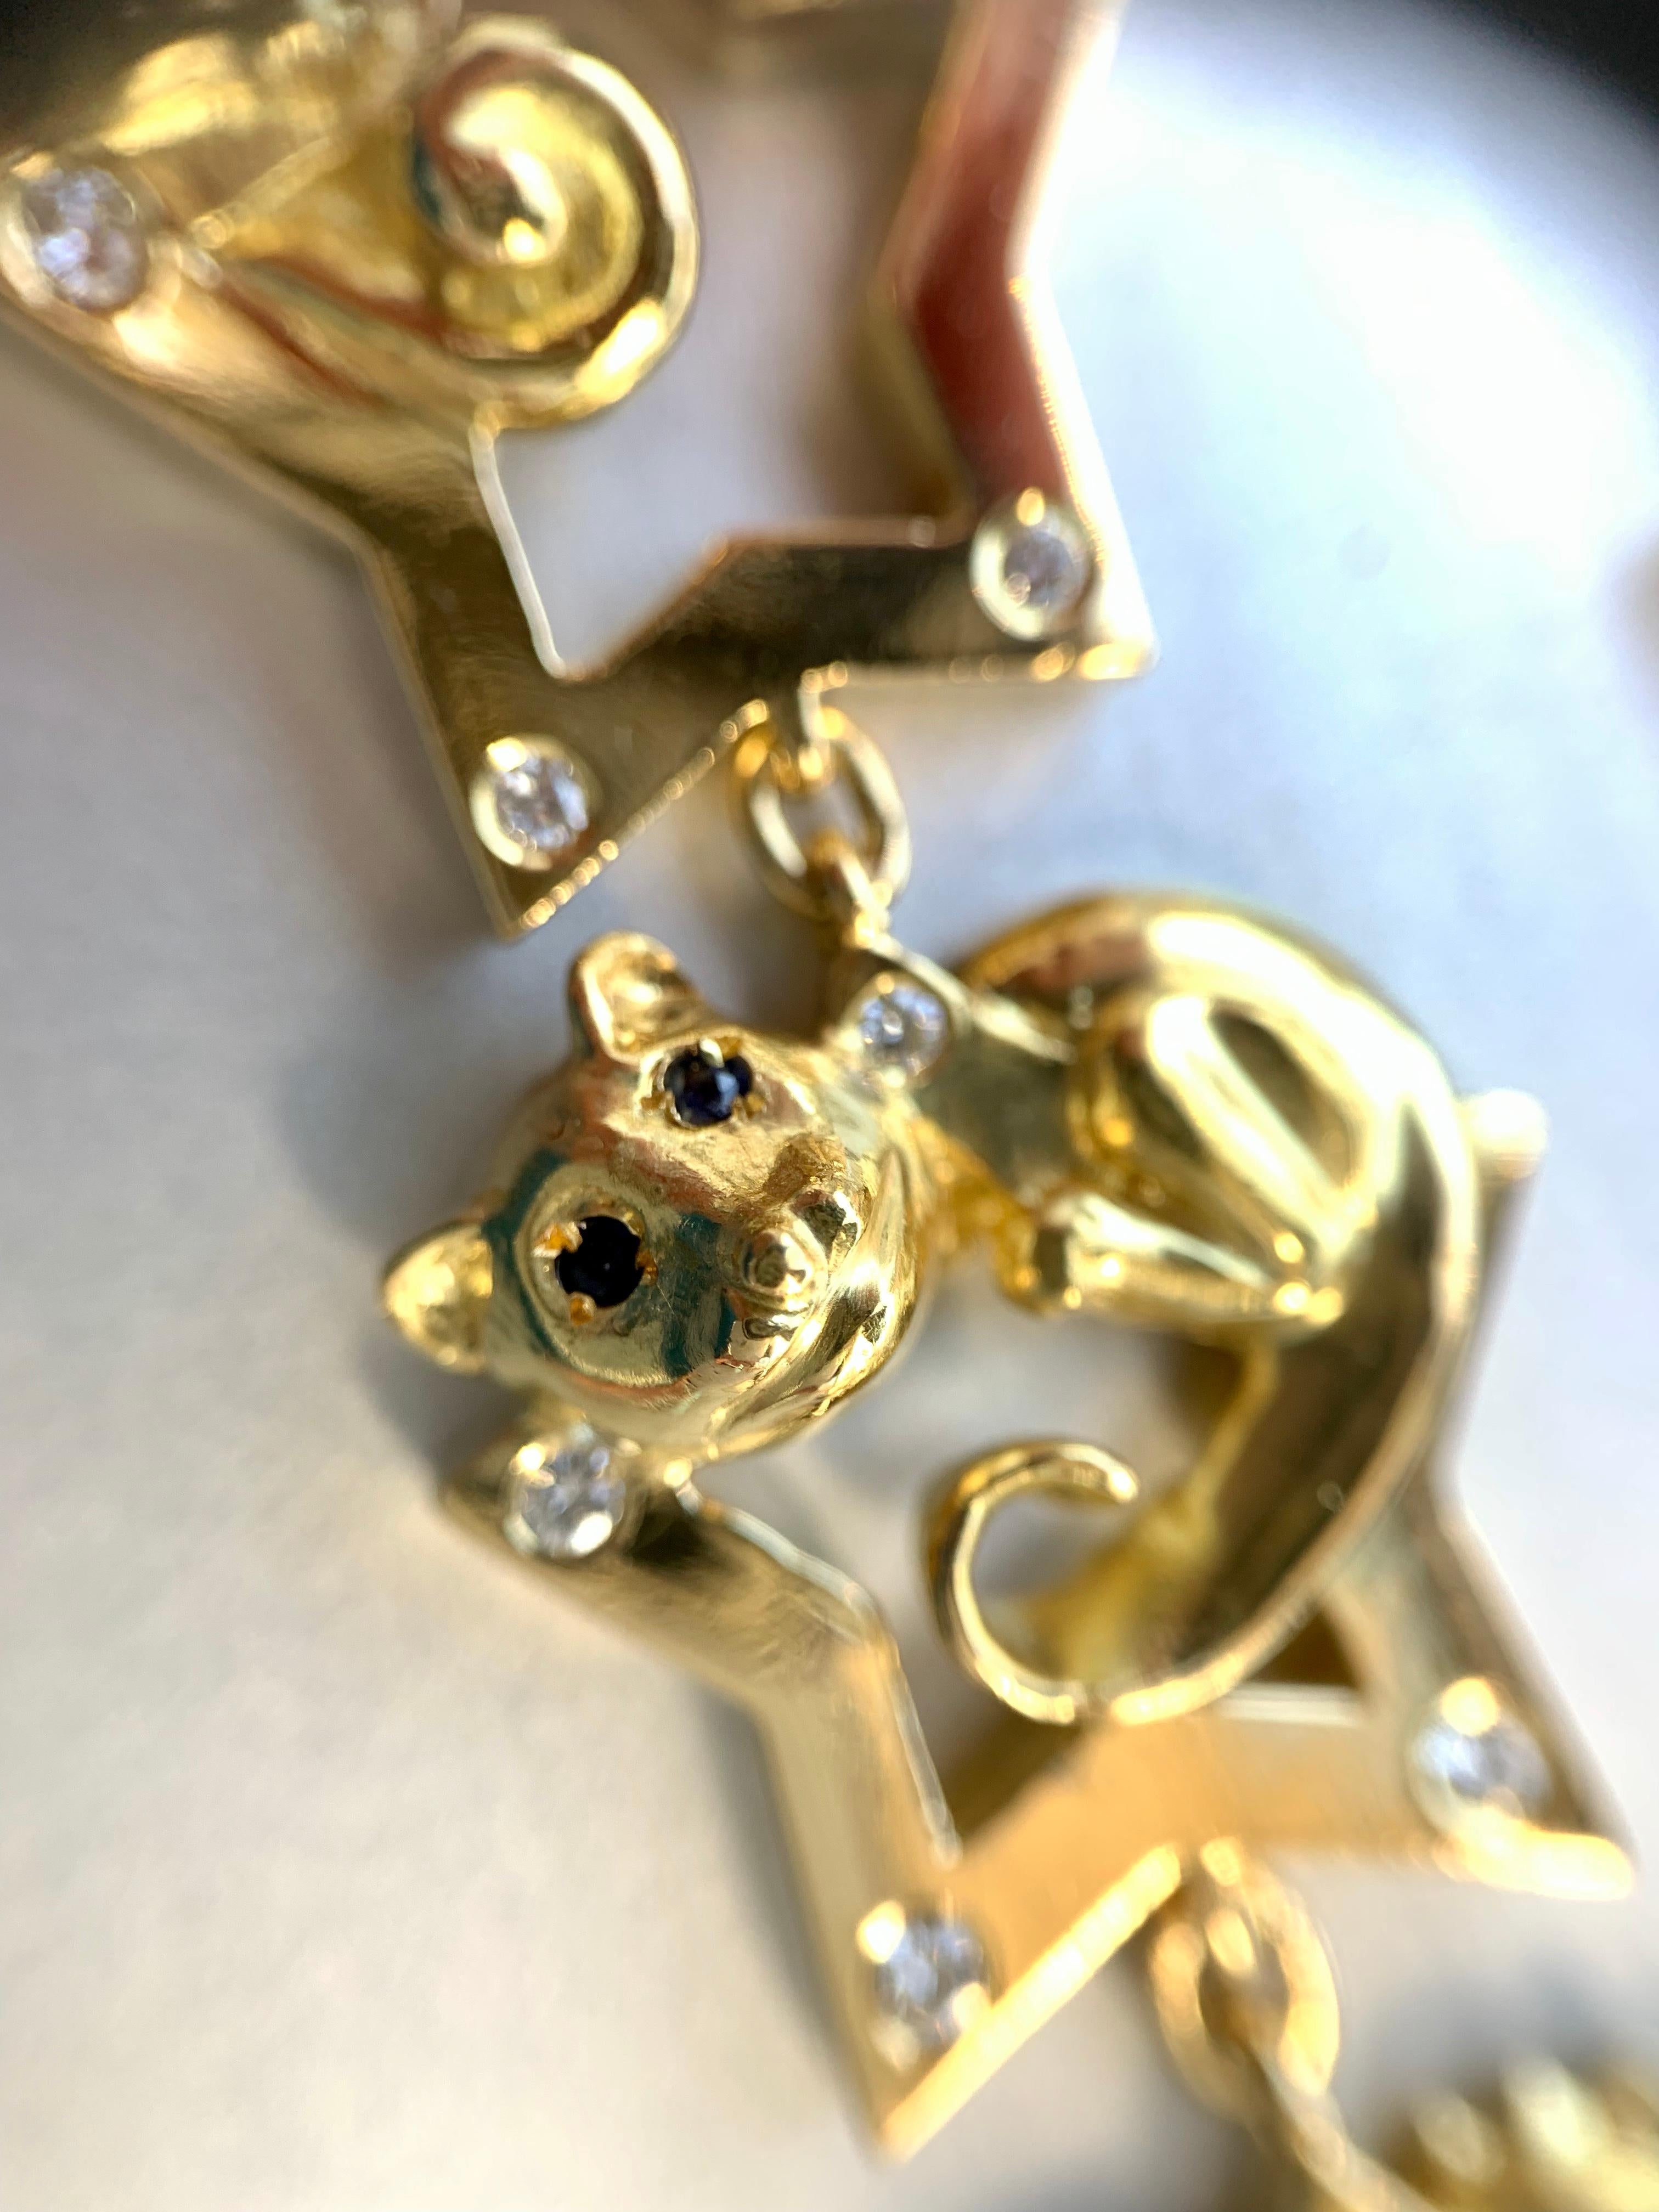 18 Karat Charles Turi Animal Star Necklace with Diamonds and Gemstones 2